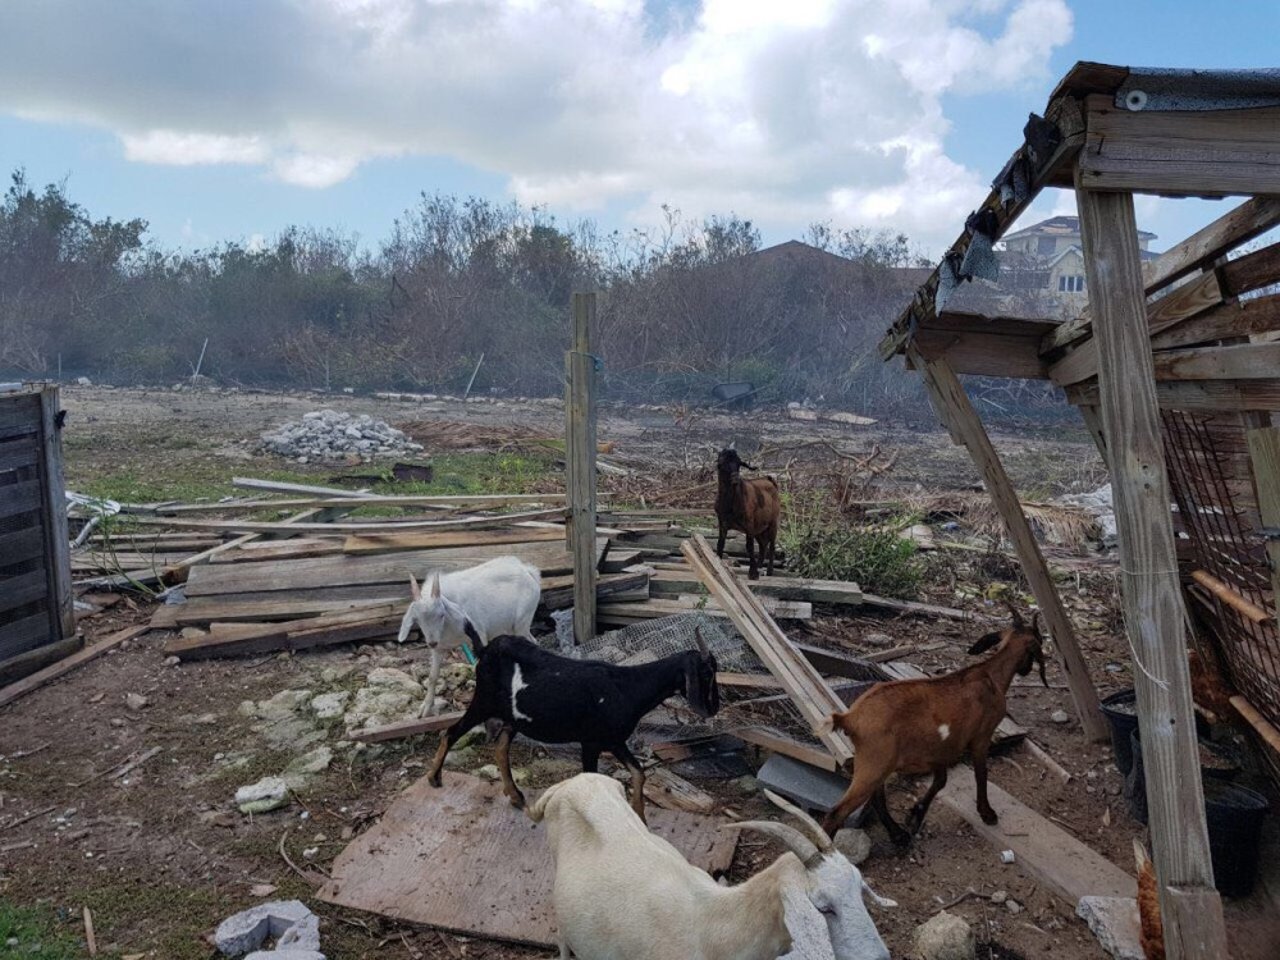 goats_among_rubble